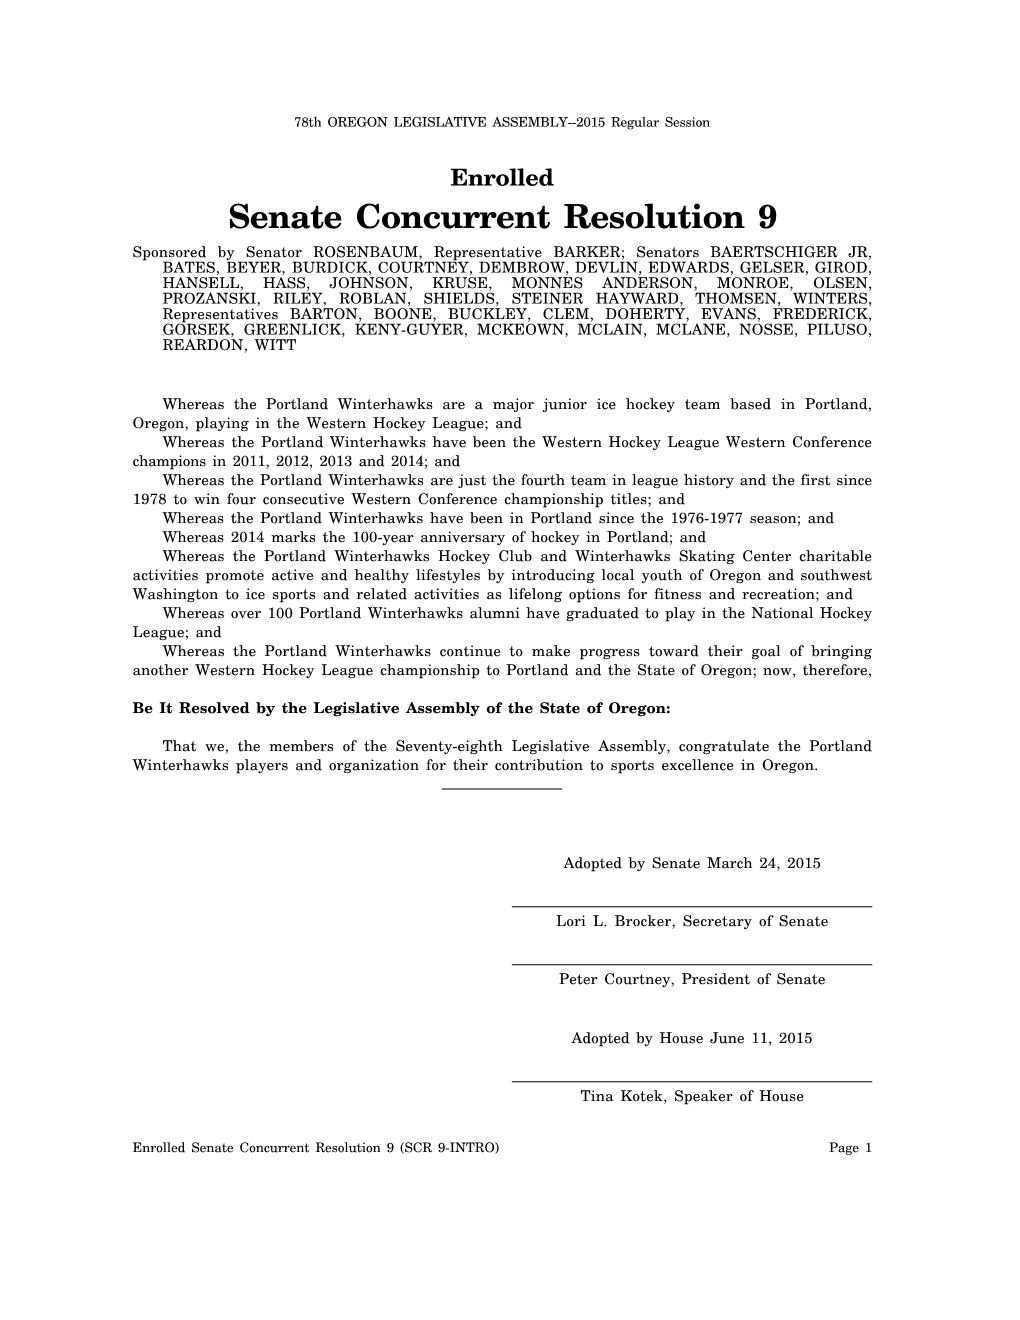 Senate Concurrent Resolution 9